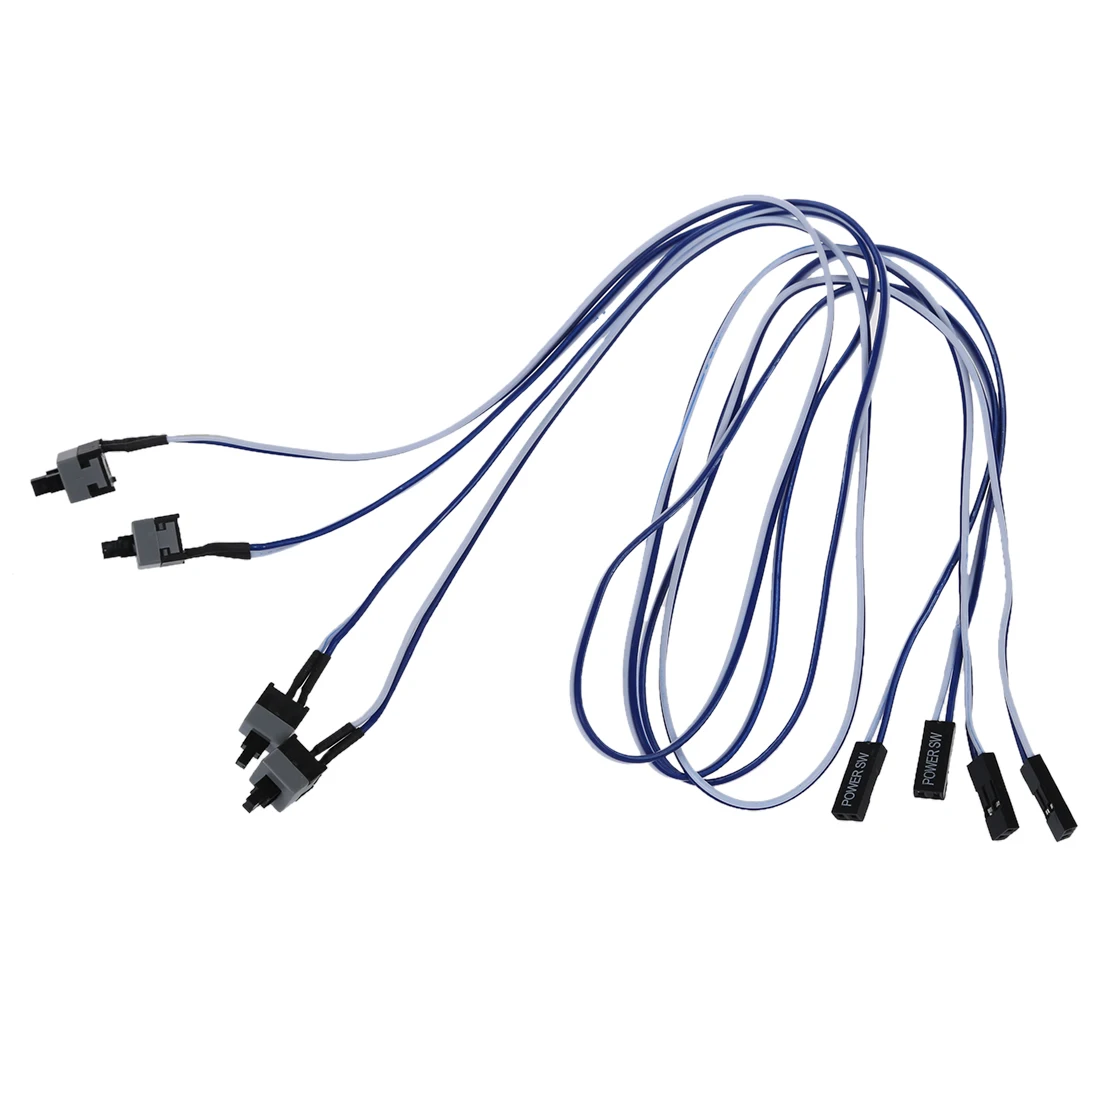 Запасные части ПК мощность Мгновенный кнопочный переключатель соединительный кабель 4 шт